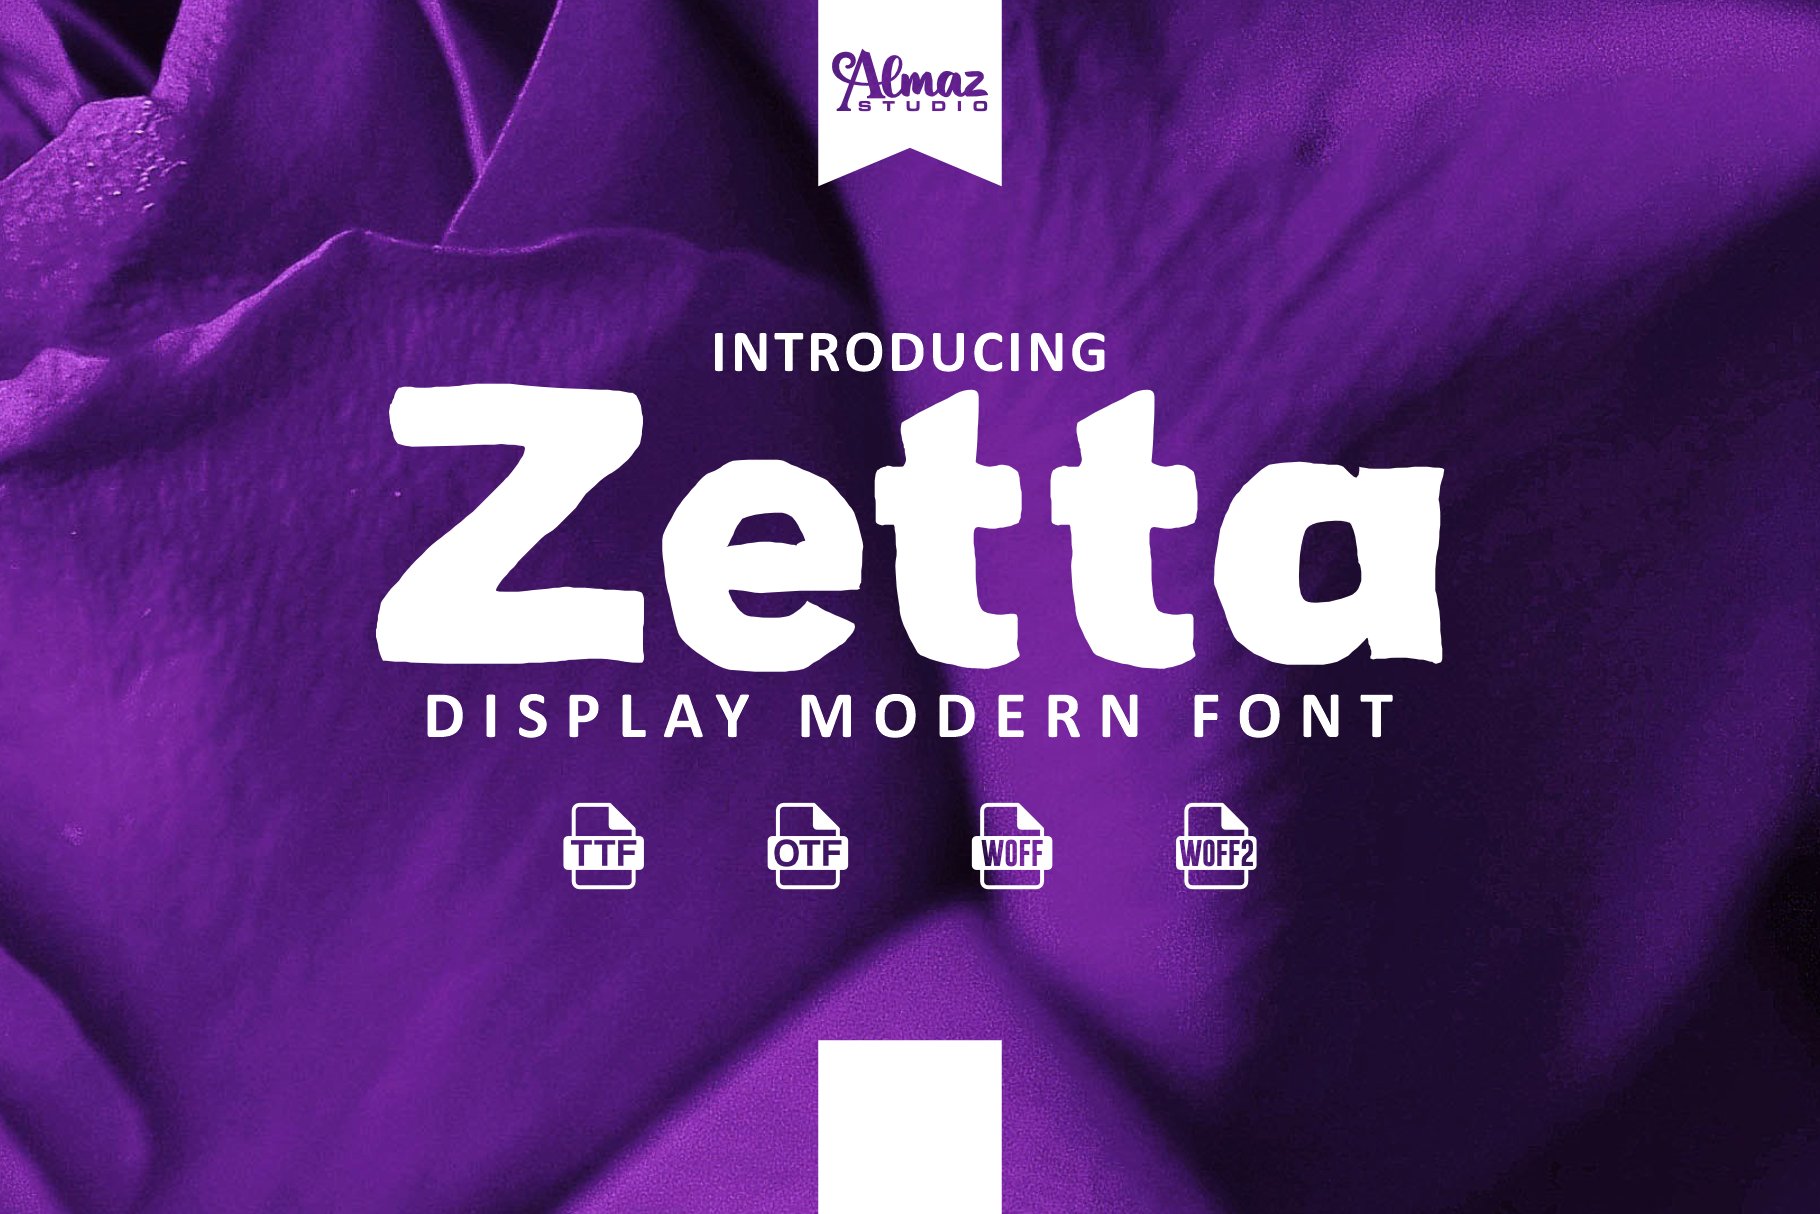 Zetta cover image.